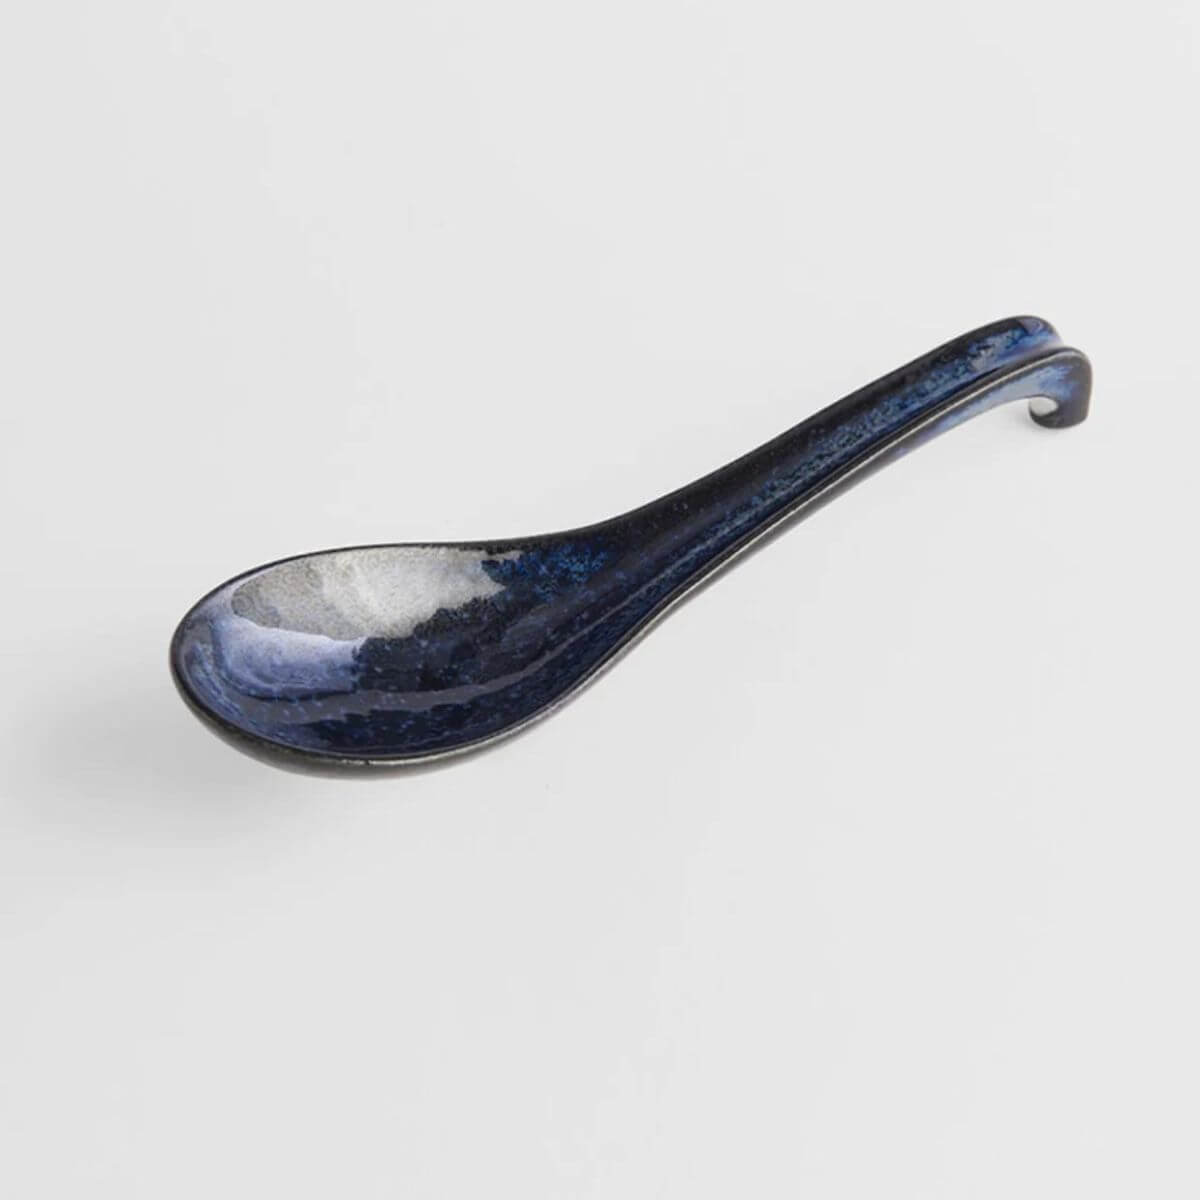 Naibu Large Spoon Indigo Blue